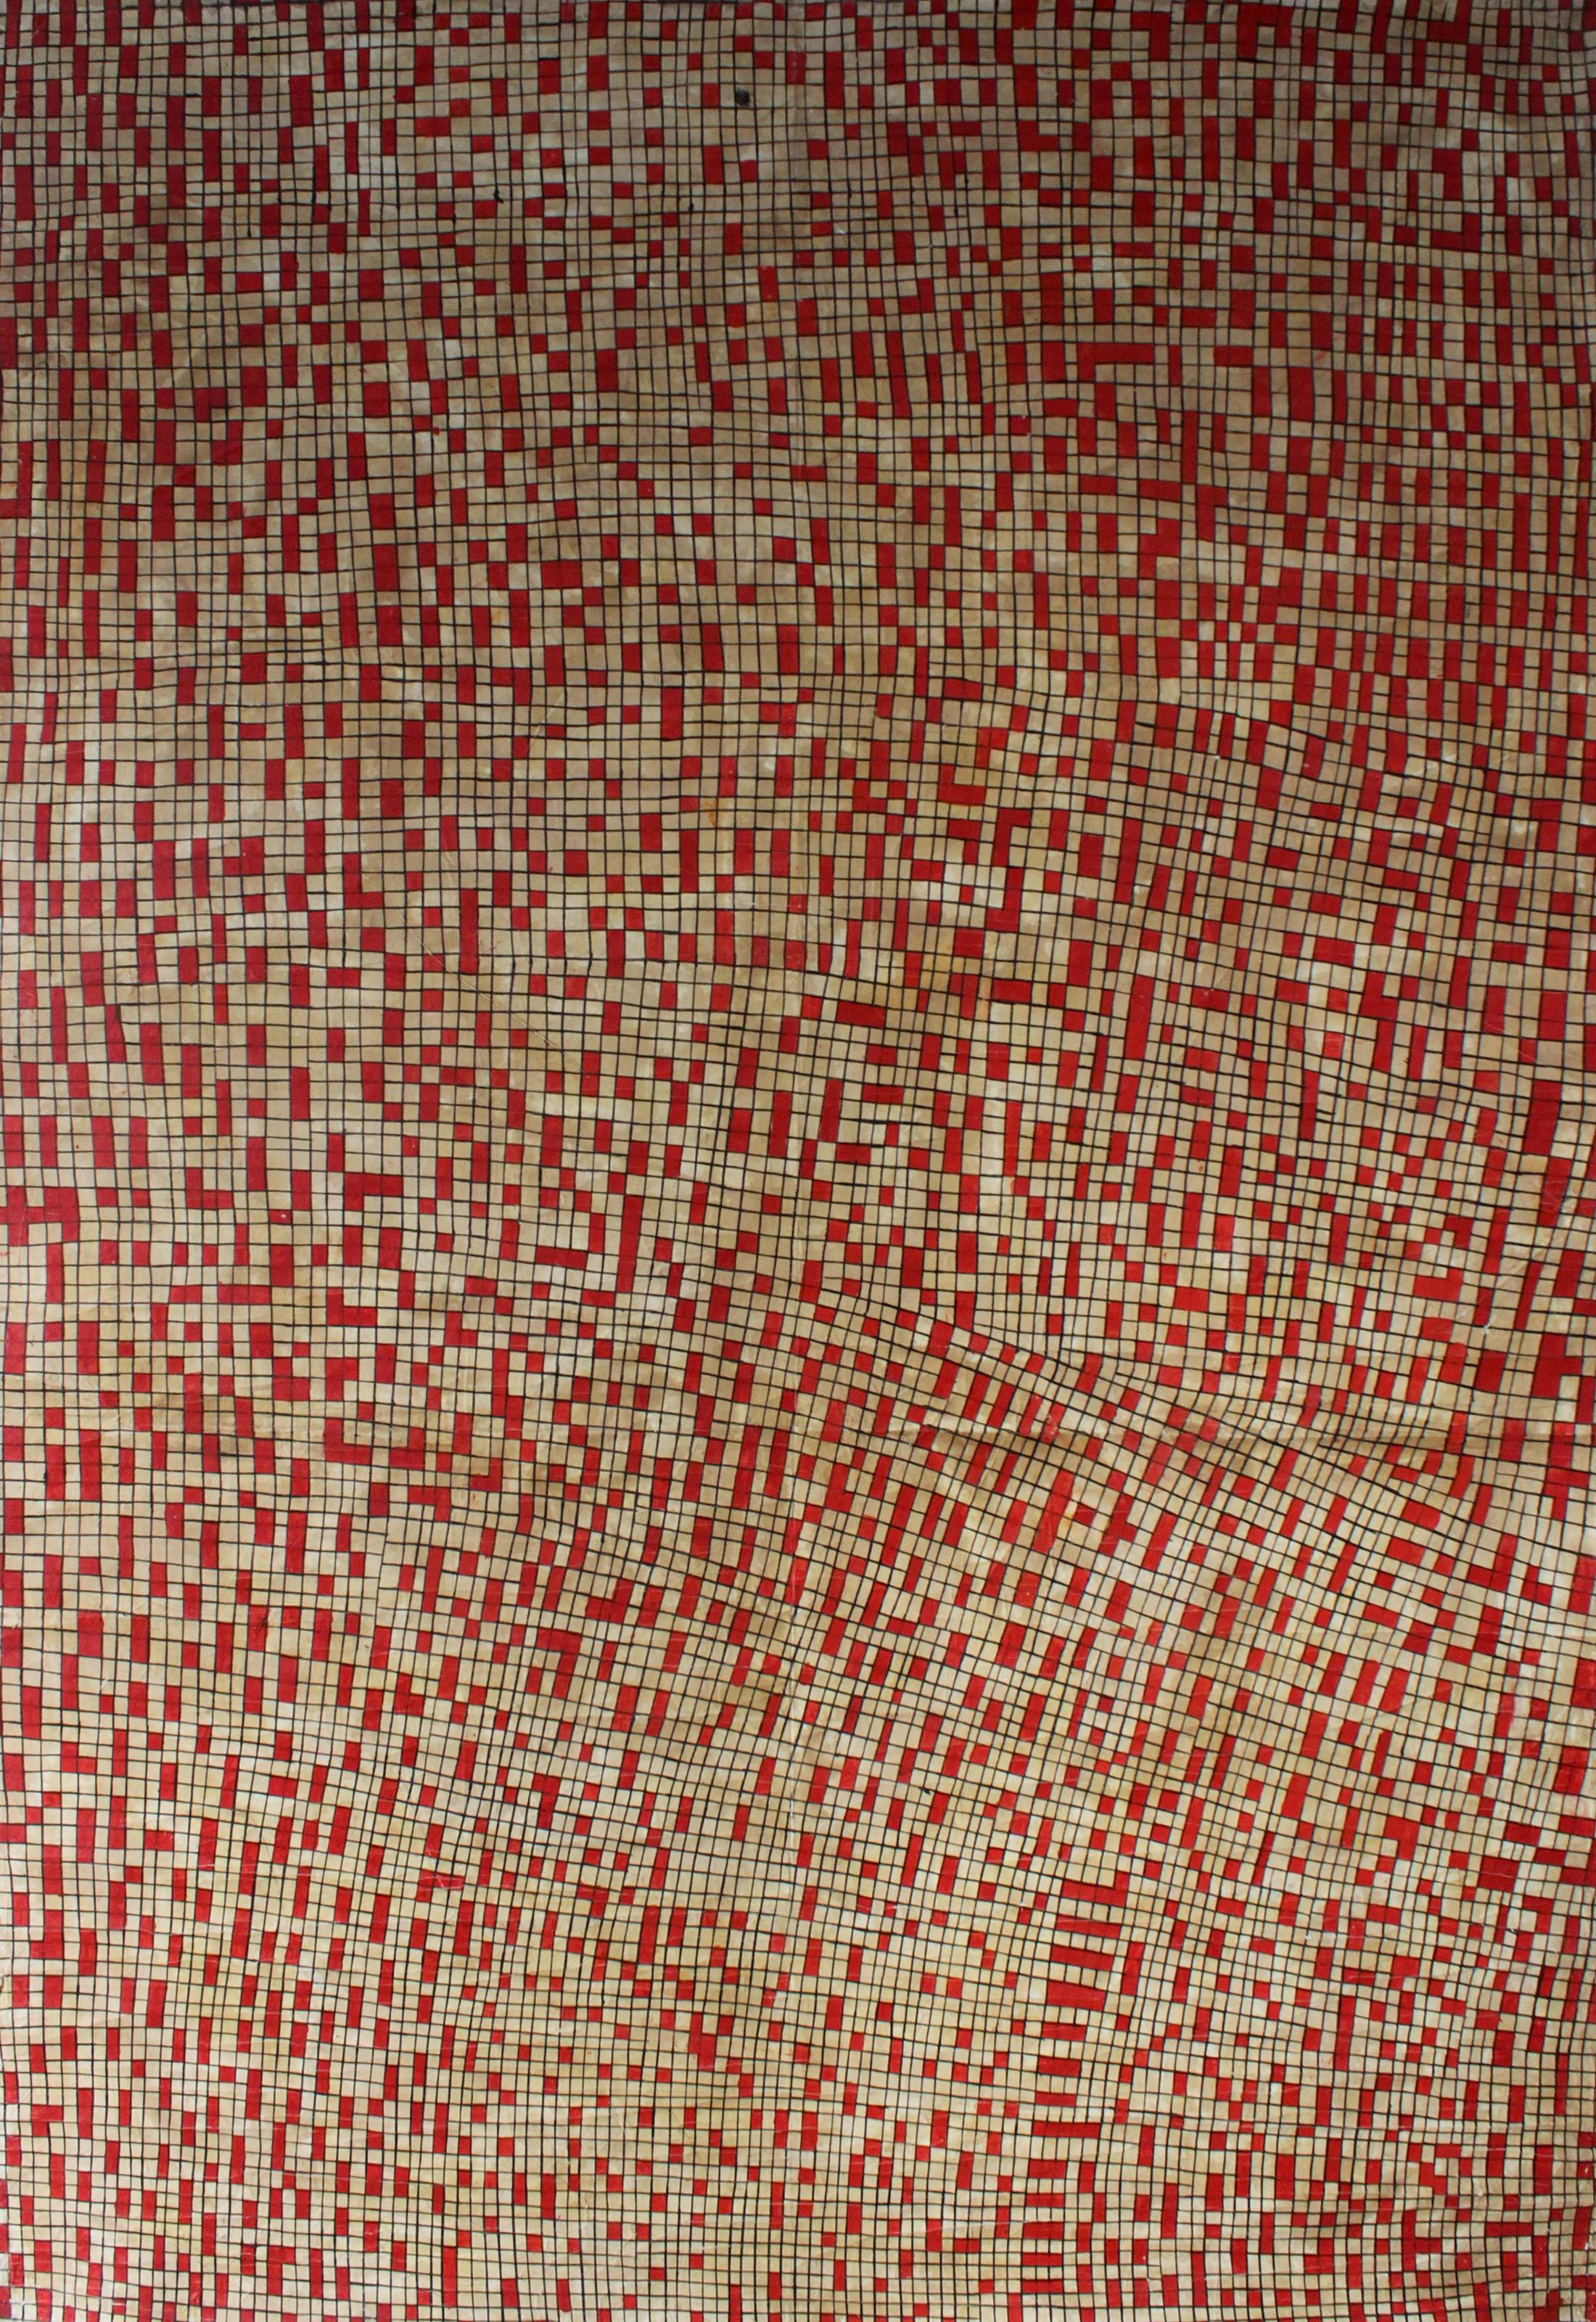 "Labyrinthine III" Tinte auf Stoff Gemälde 89" x 63" Zoll von Mohamed Monaiseer

Serie Trinity (2015)

In dieser Arbeit entwickle ich eine persönliche Philosophie der Dreifaltigkeit - die Vereinigung von drei in einem. Die Dreifaltigkeit besteht aus